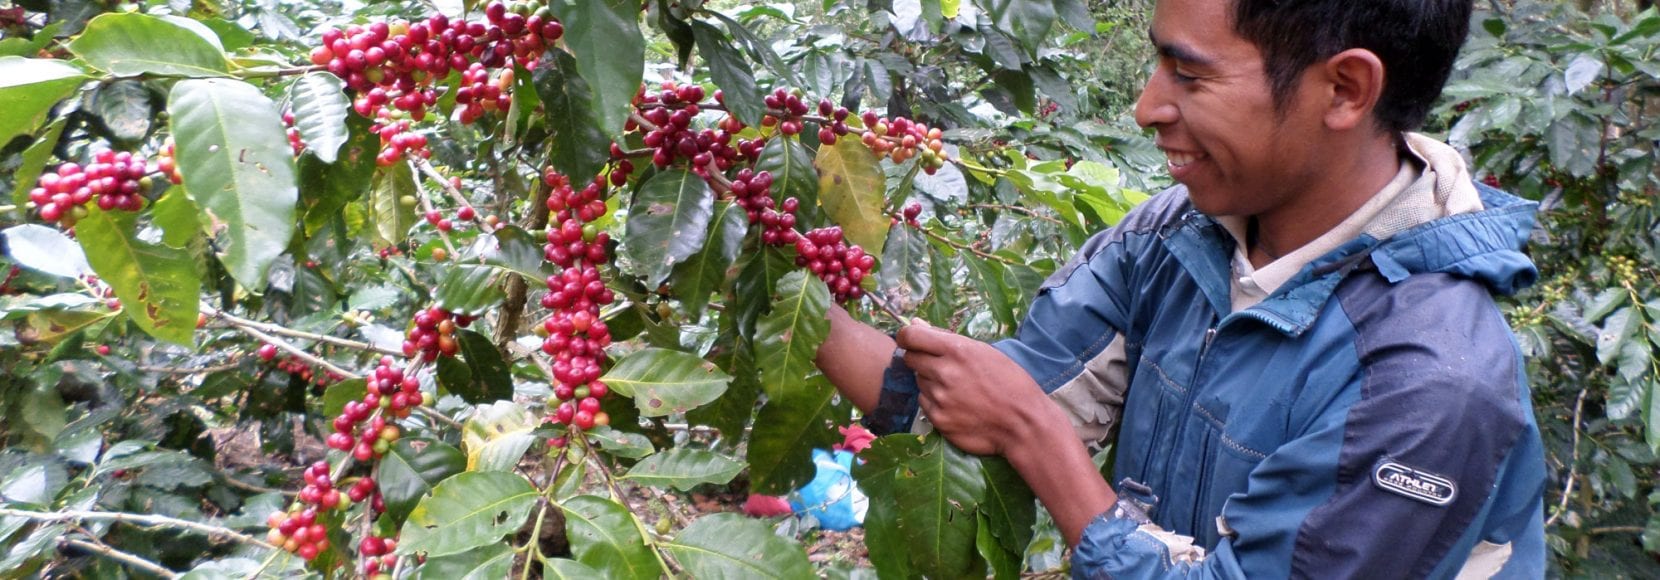 Man inspecting coffee cherries in Honduras